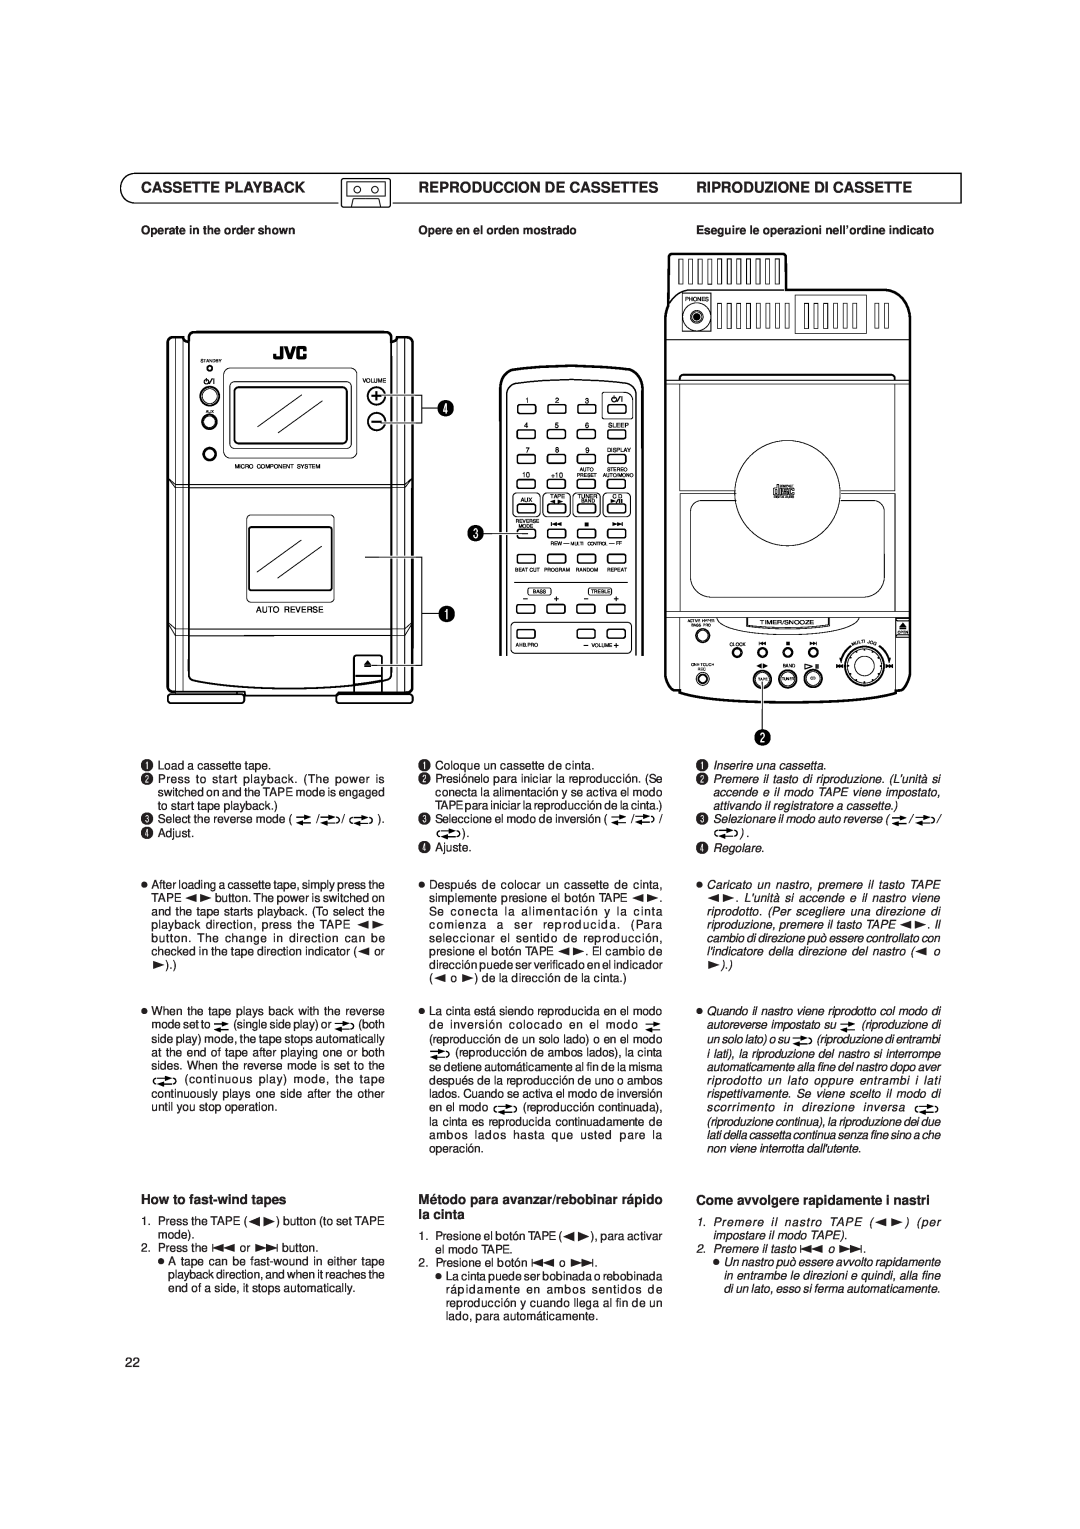 JVC UX-T151, UX-T150 manual Cassette Playback, Reproduccion De Cassettes, Riproduzione Di Cassette, How to fast-windtapes 